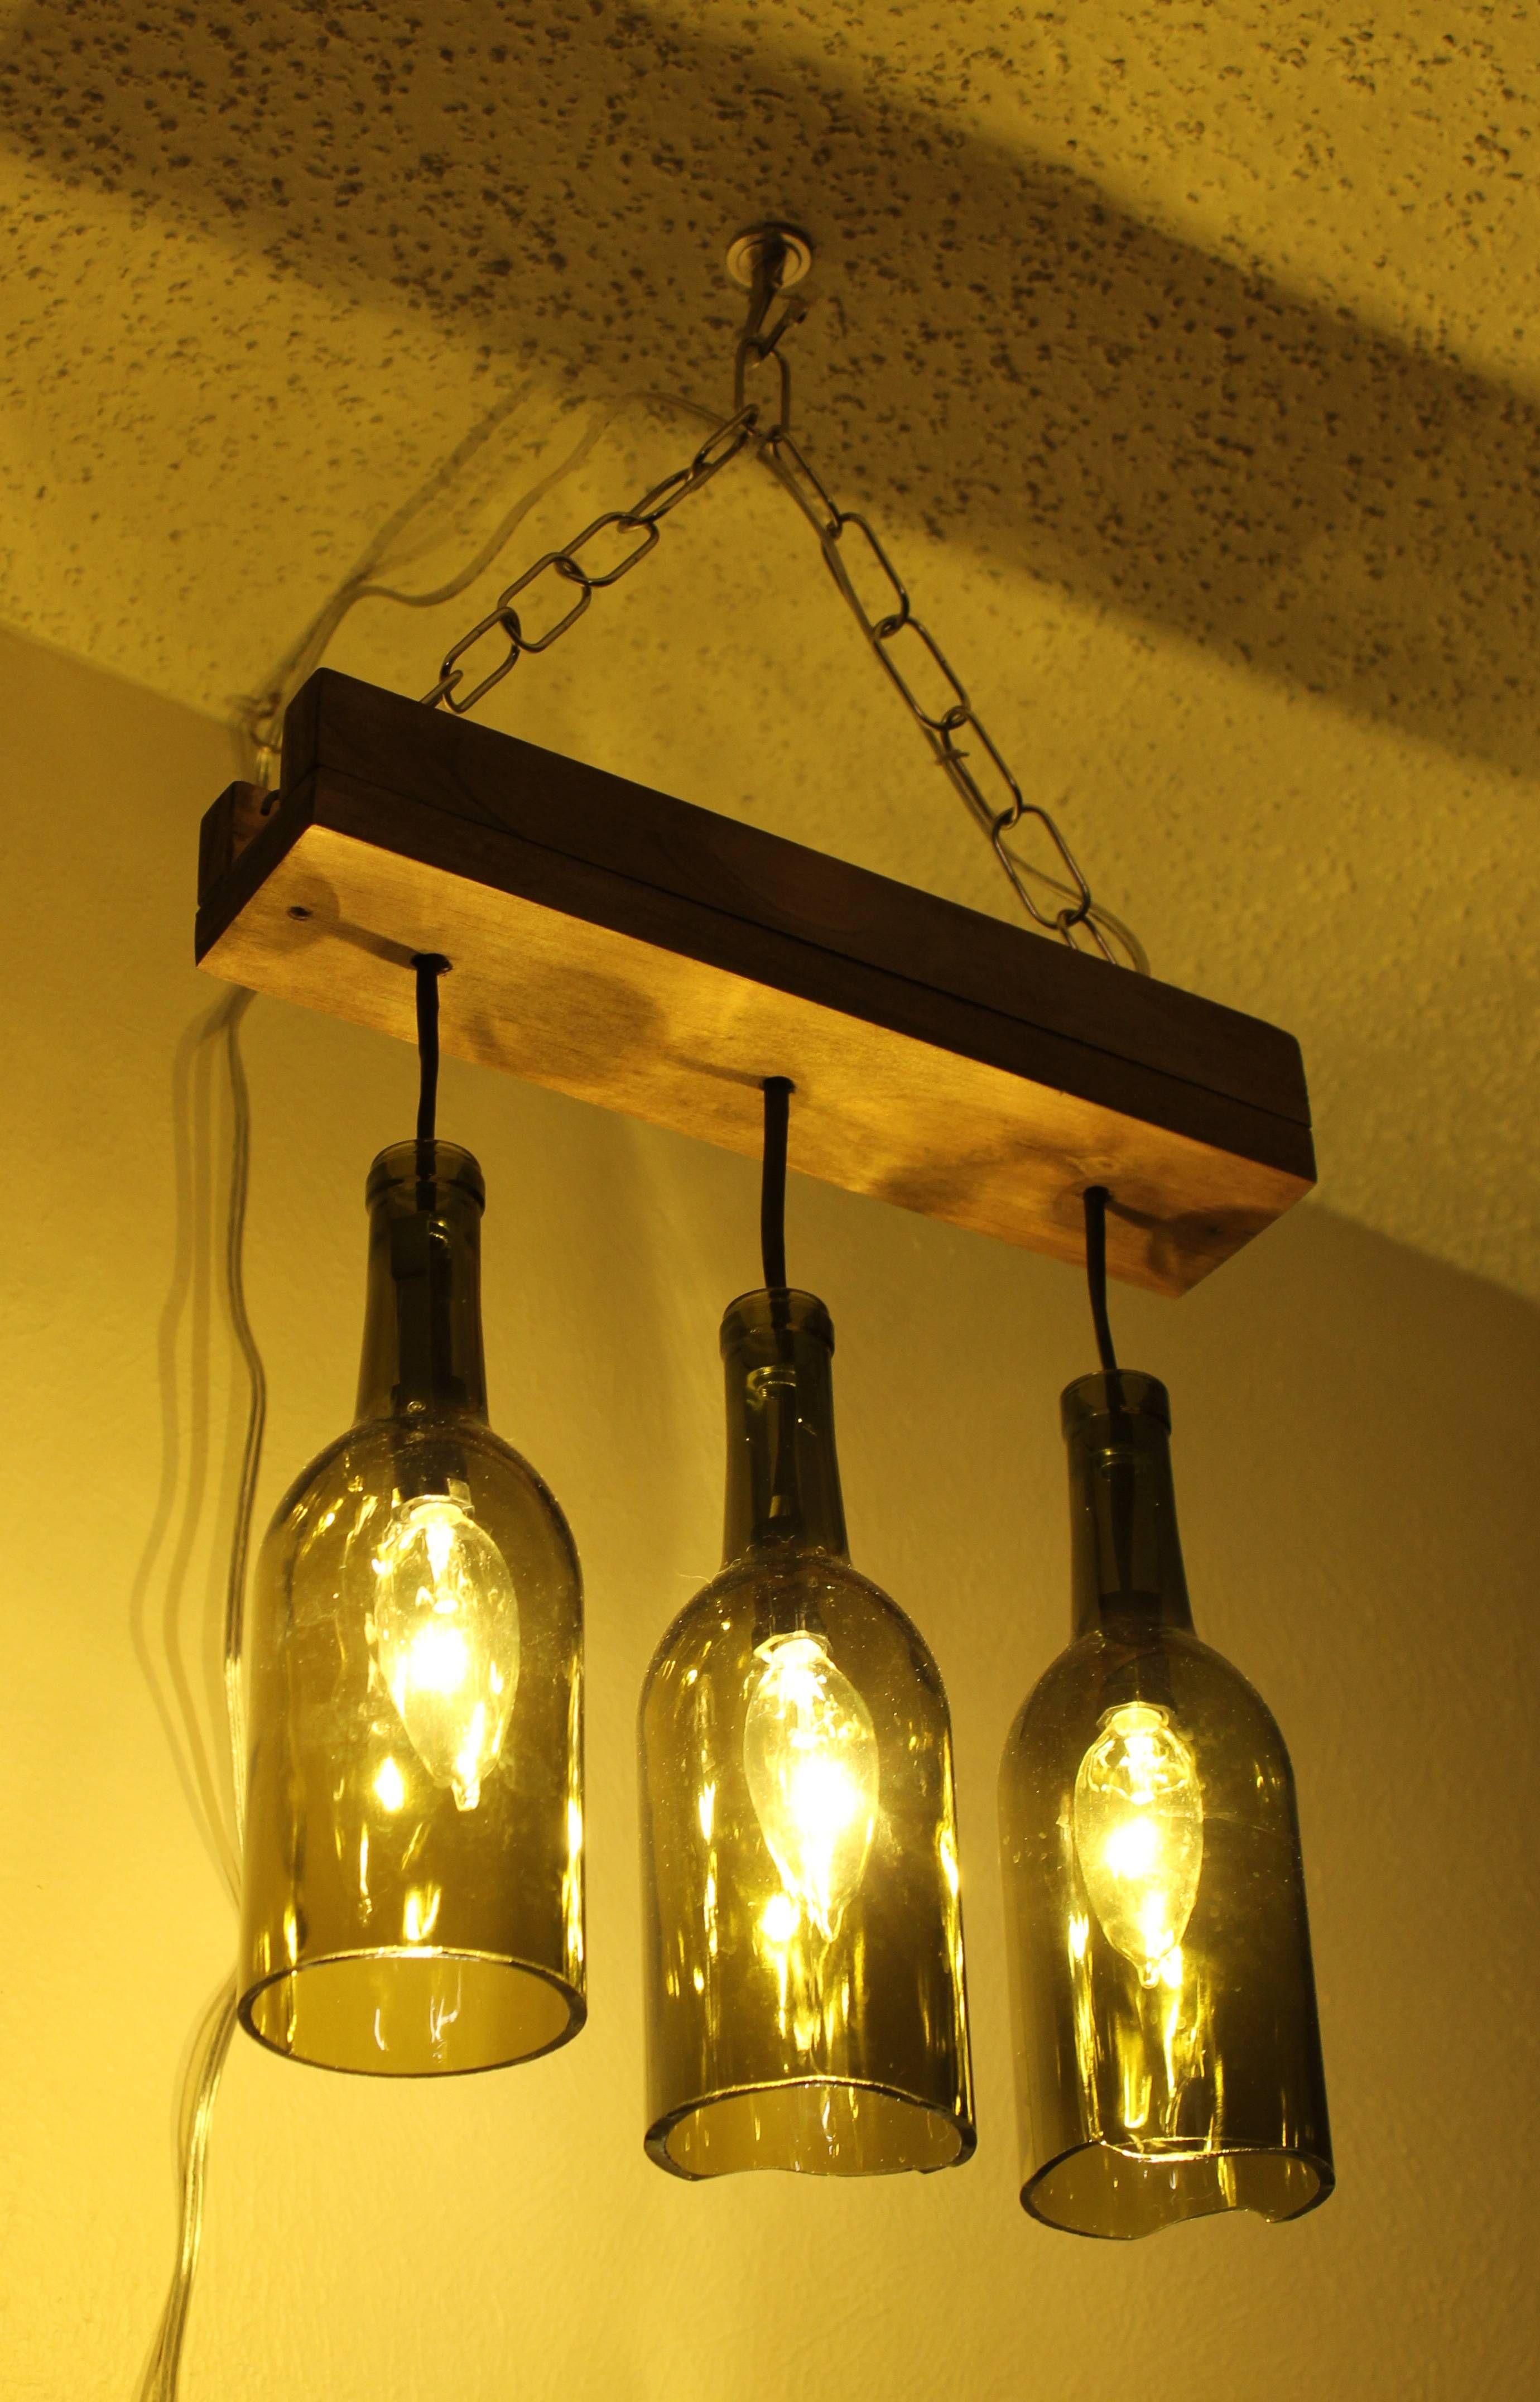 Outstanding Wine Bottle Pendant Light Kit 95 On Awesome Room Decor In Wine Bottle Pendant Light Kits (View 4 of 15)